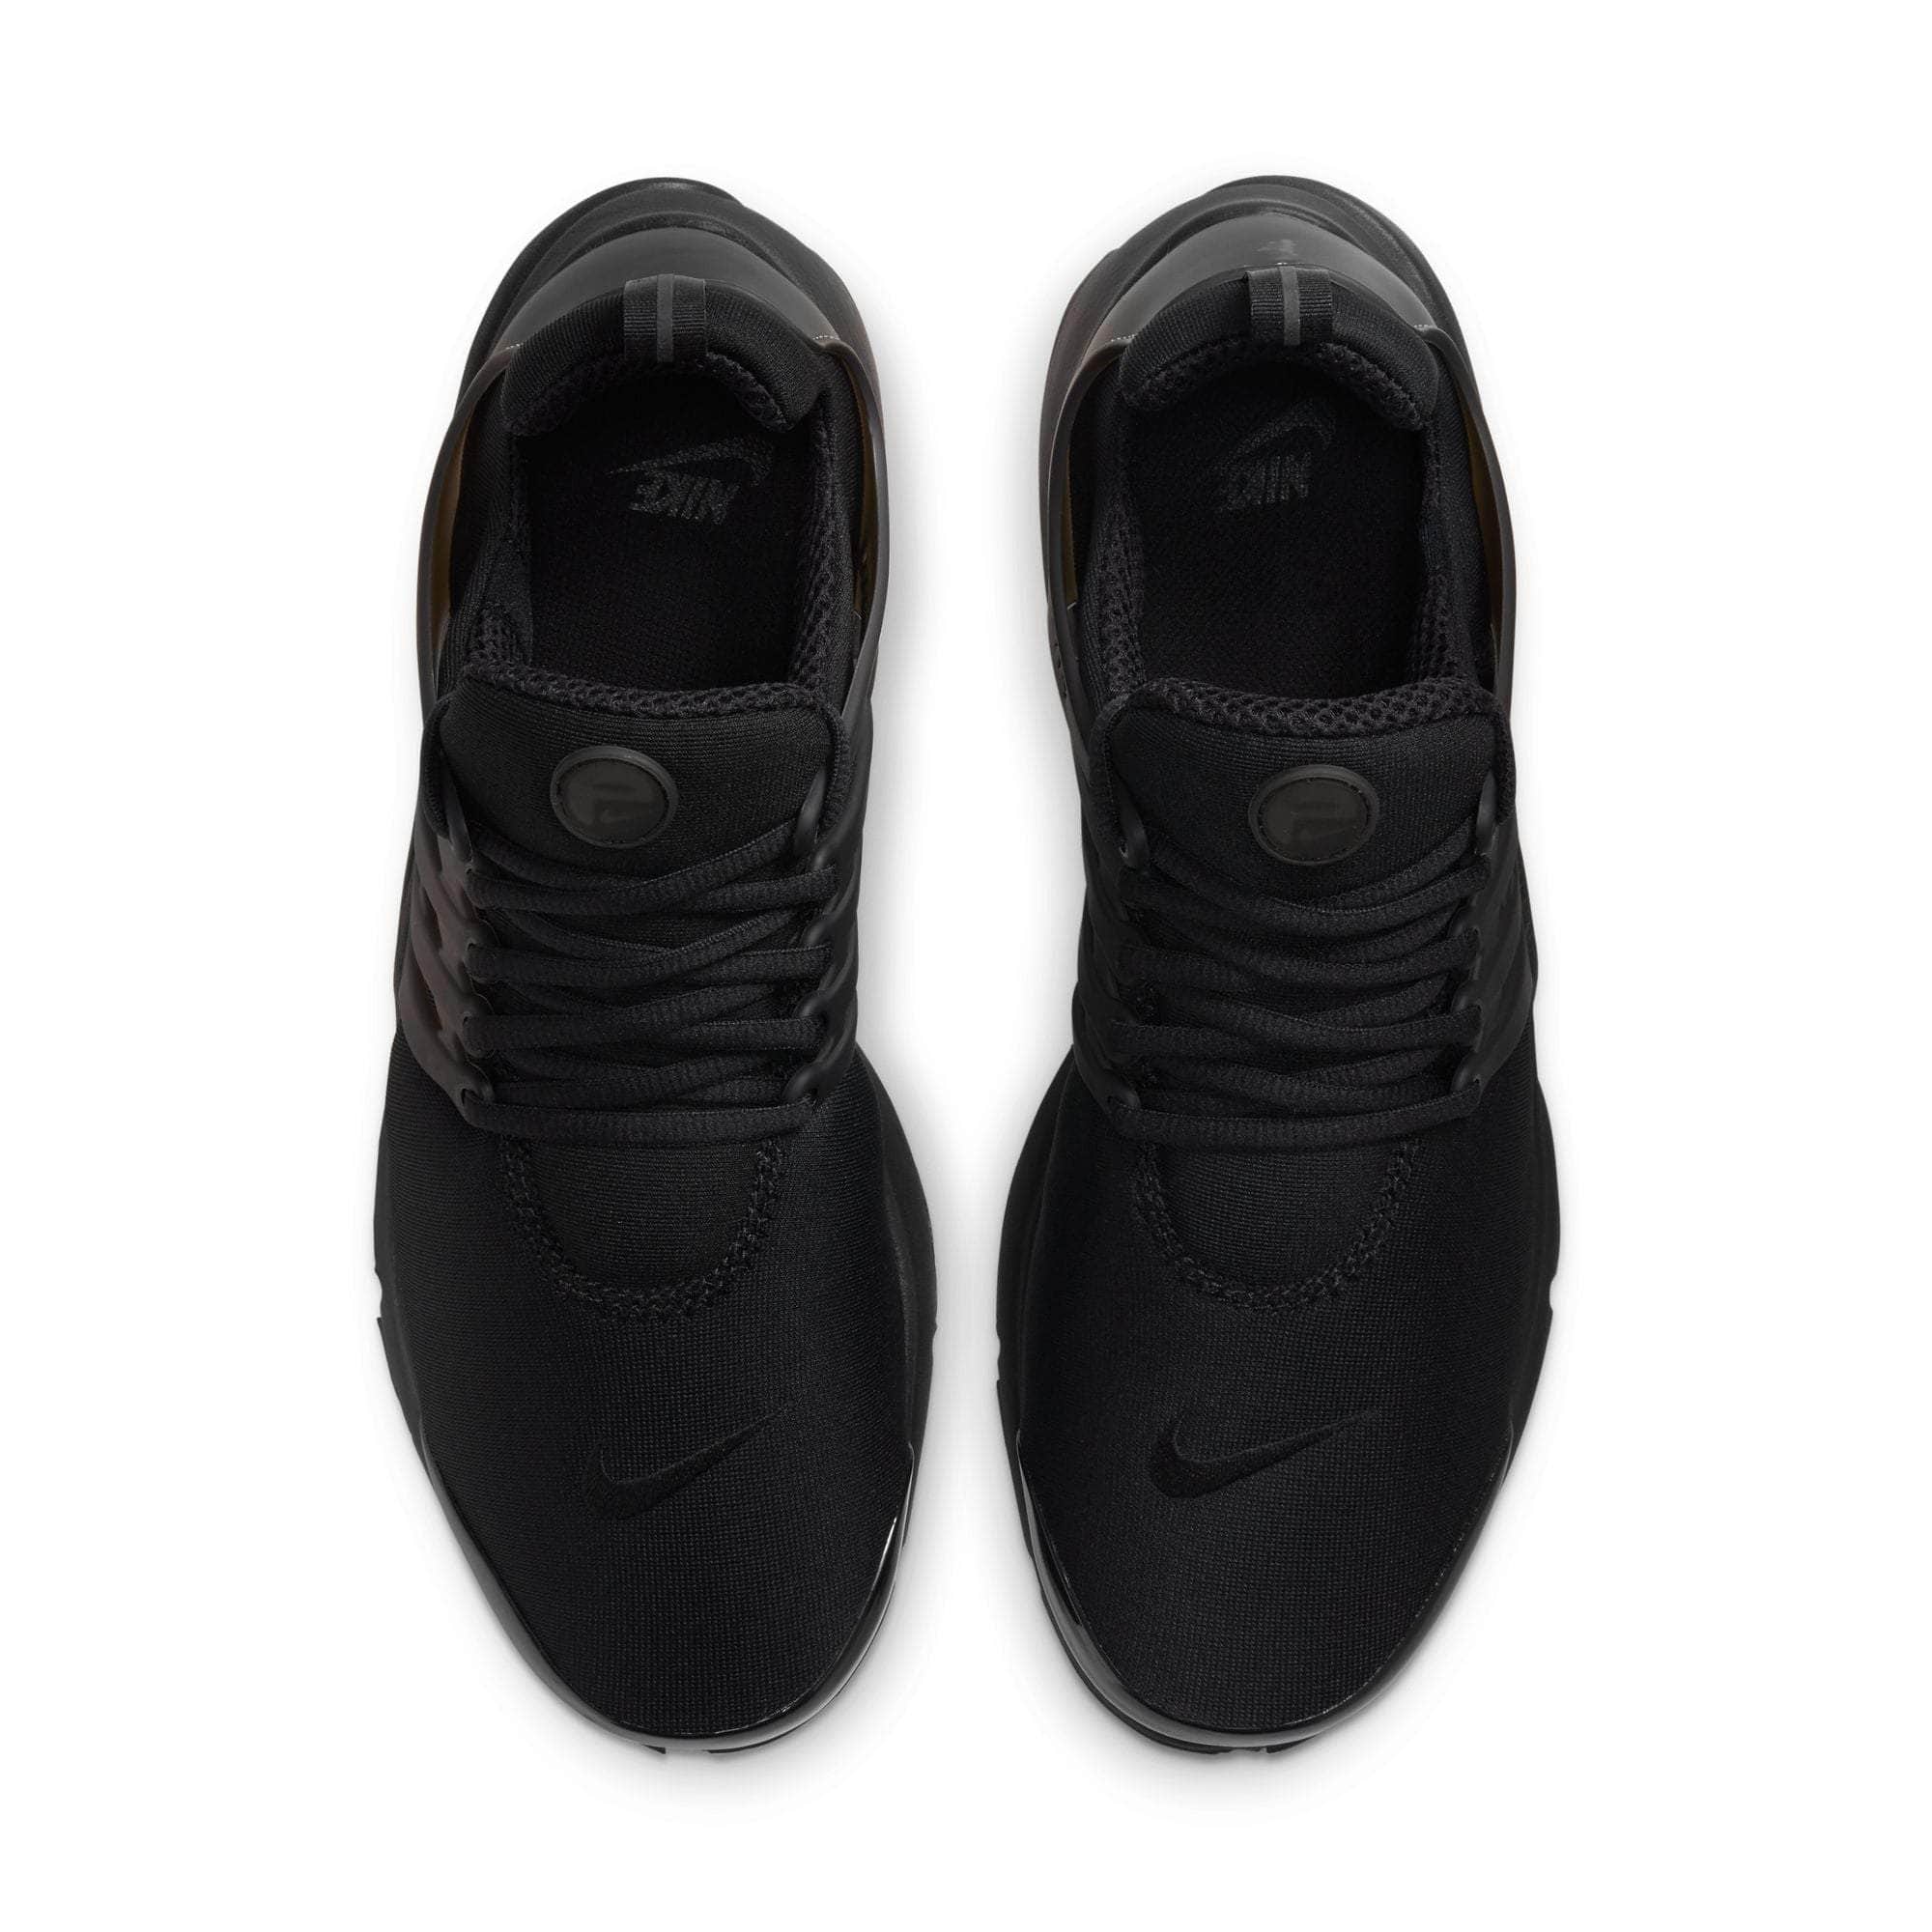 NIKE FOOTWEAR Nike Air Presto "Triple Black" - Men's